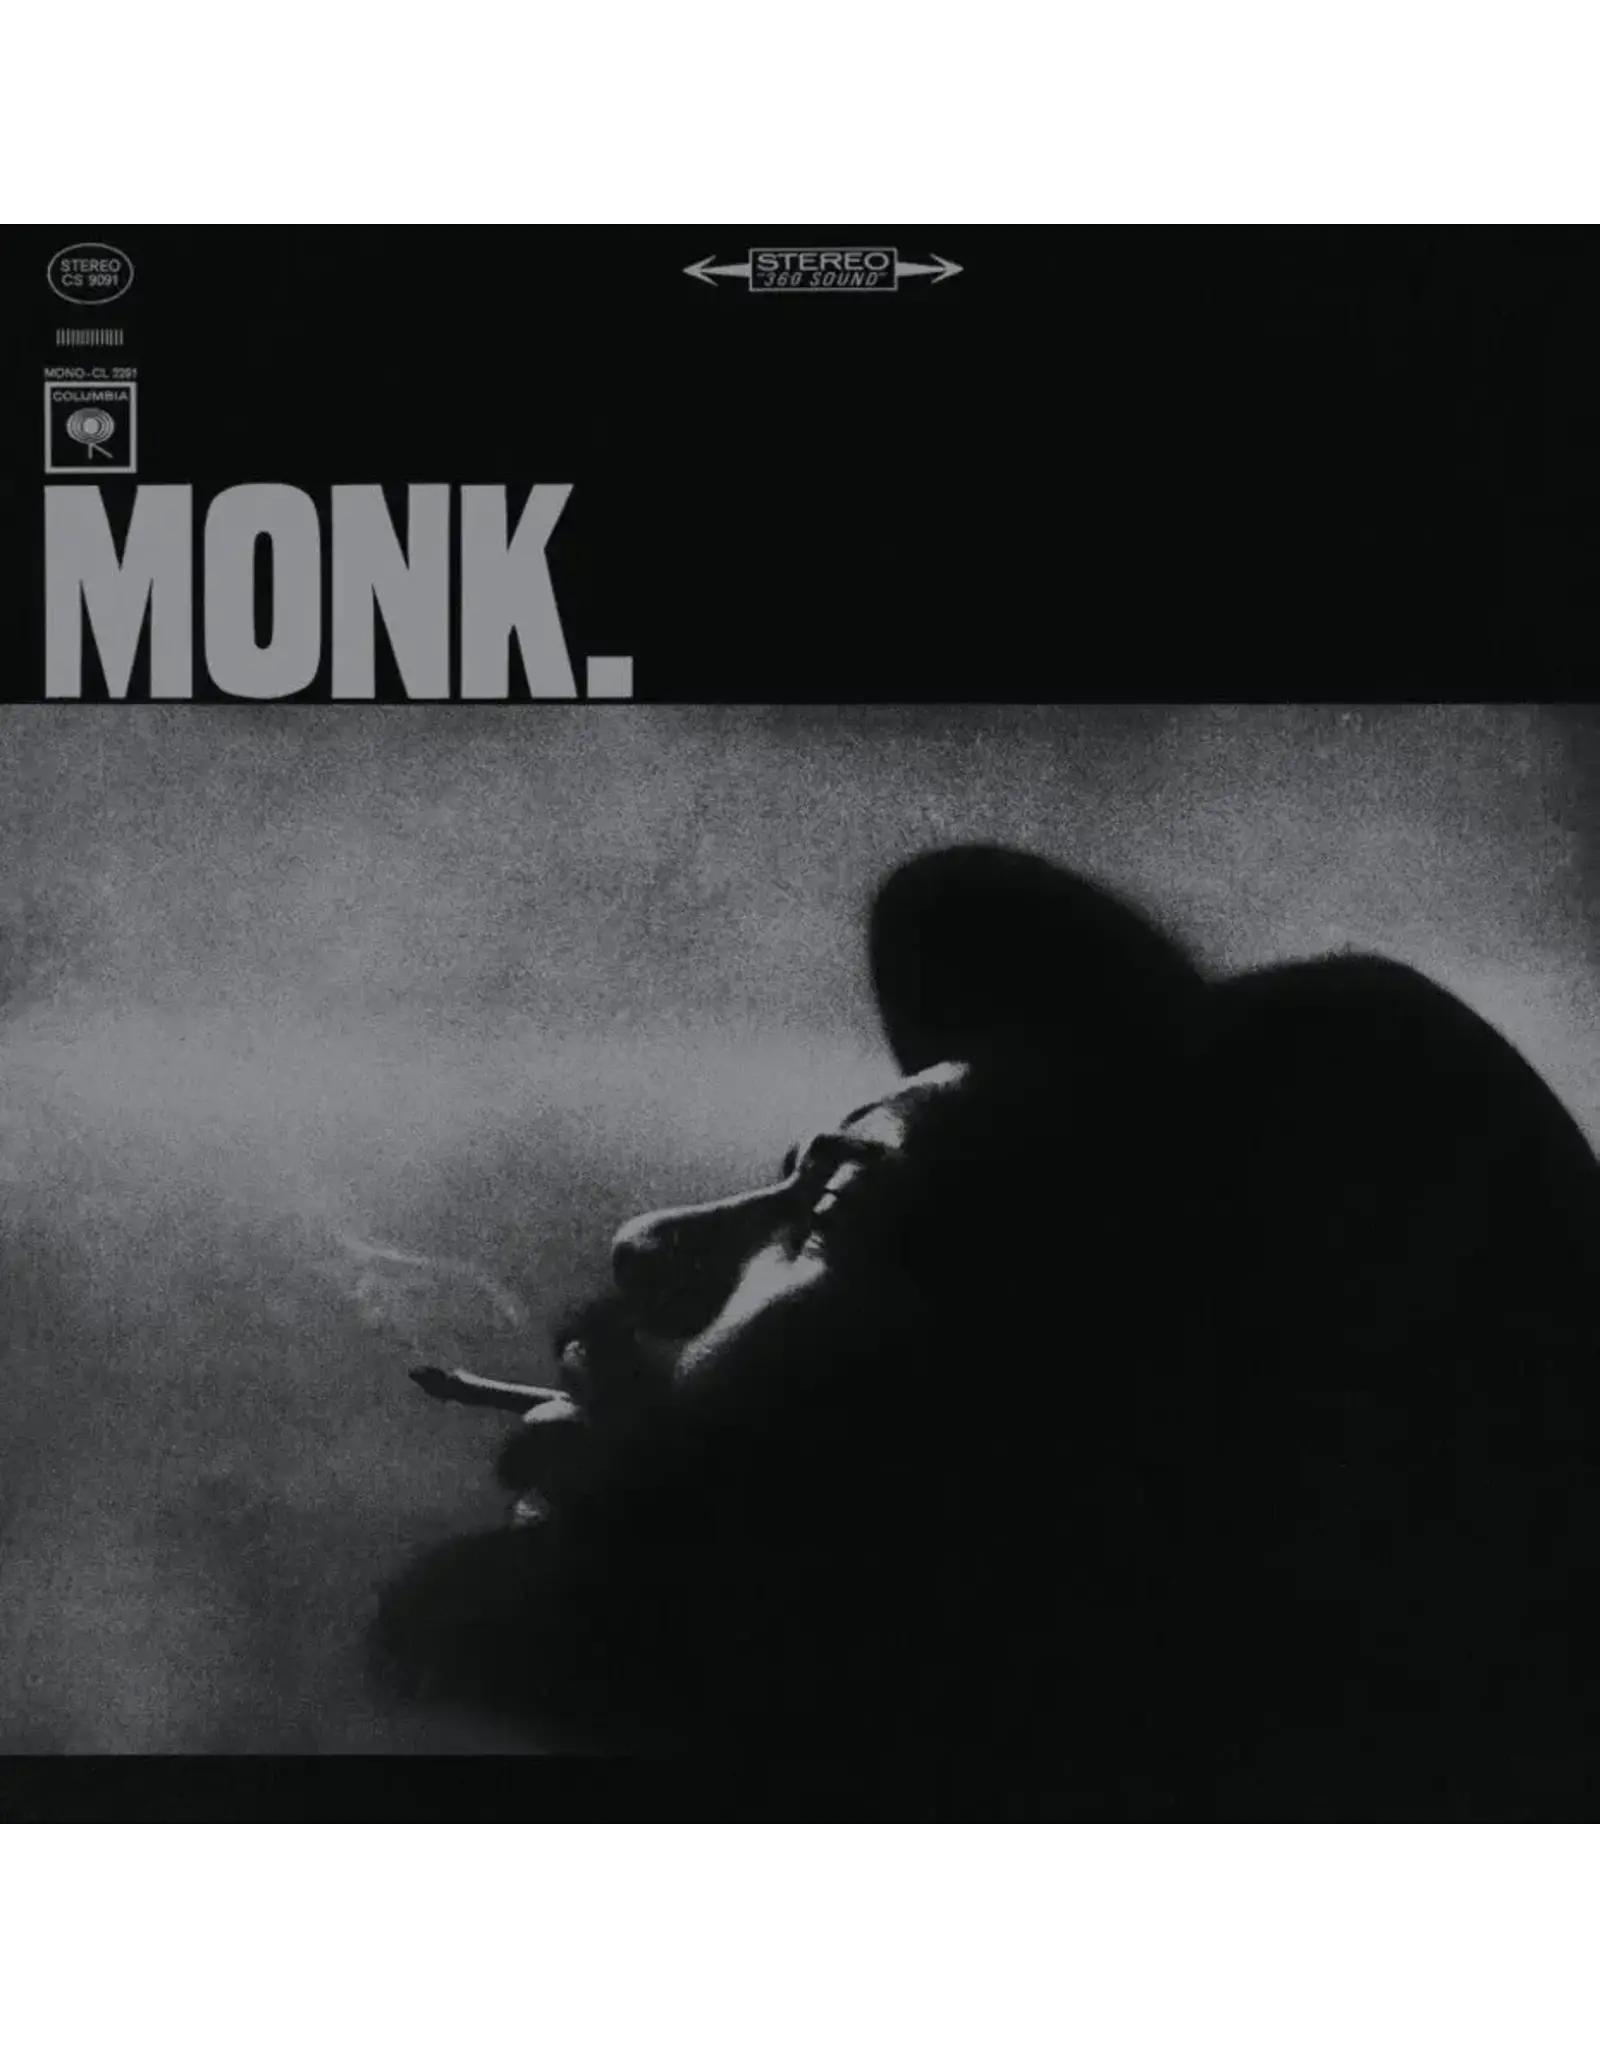 Music on Vinyl Monk, Thelonius: MONK LP